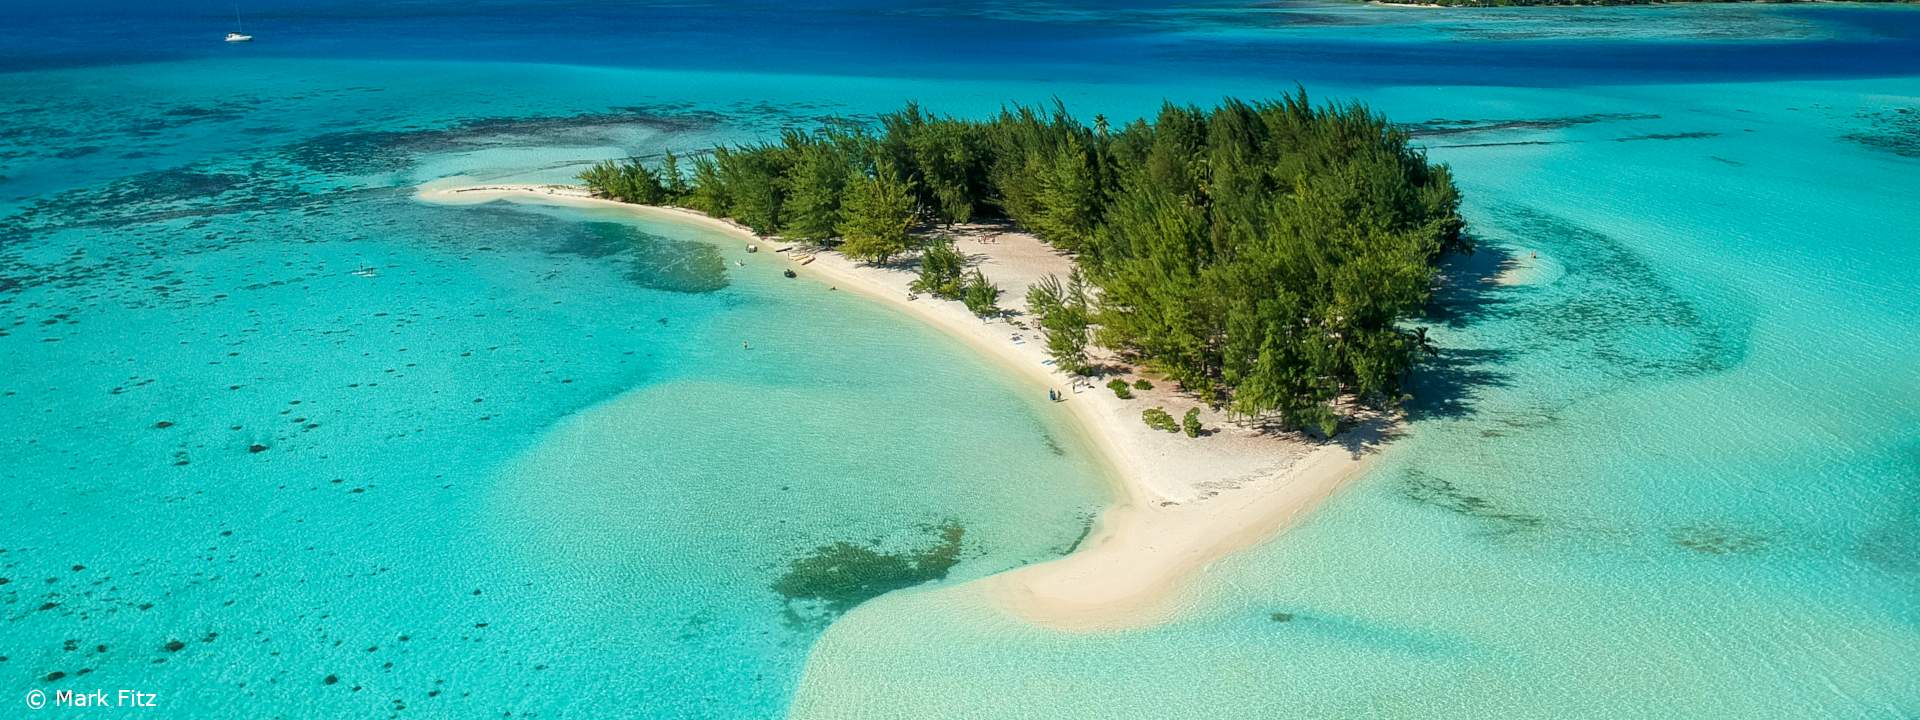 Entdecken Sie Polynesien und seine einmaligen Inseln an Bord der Panorama II